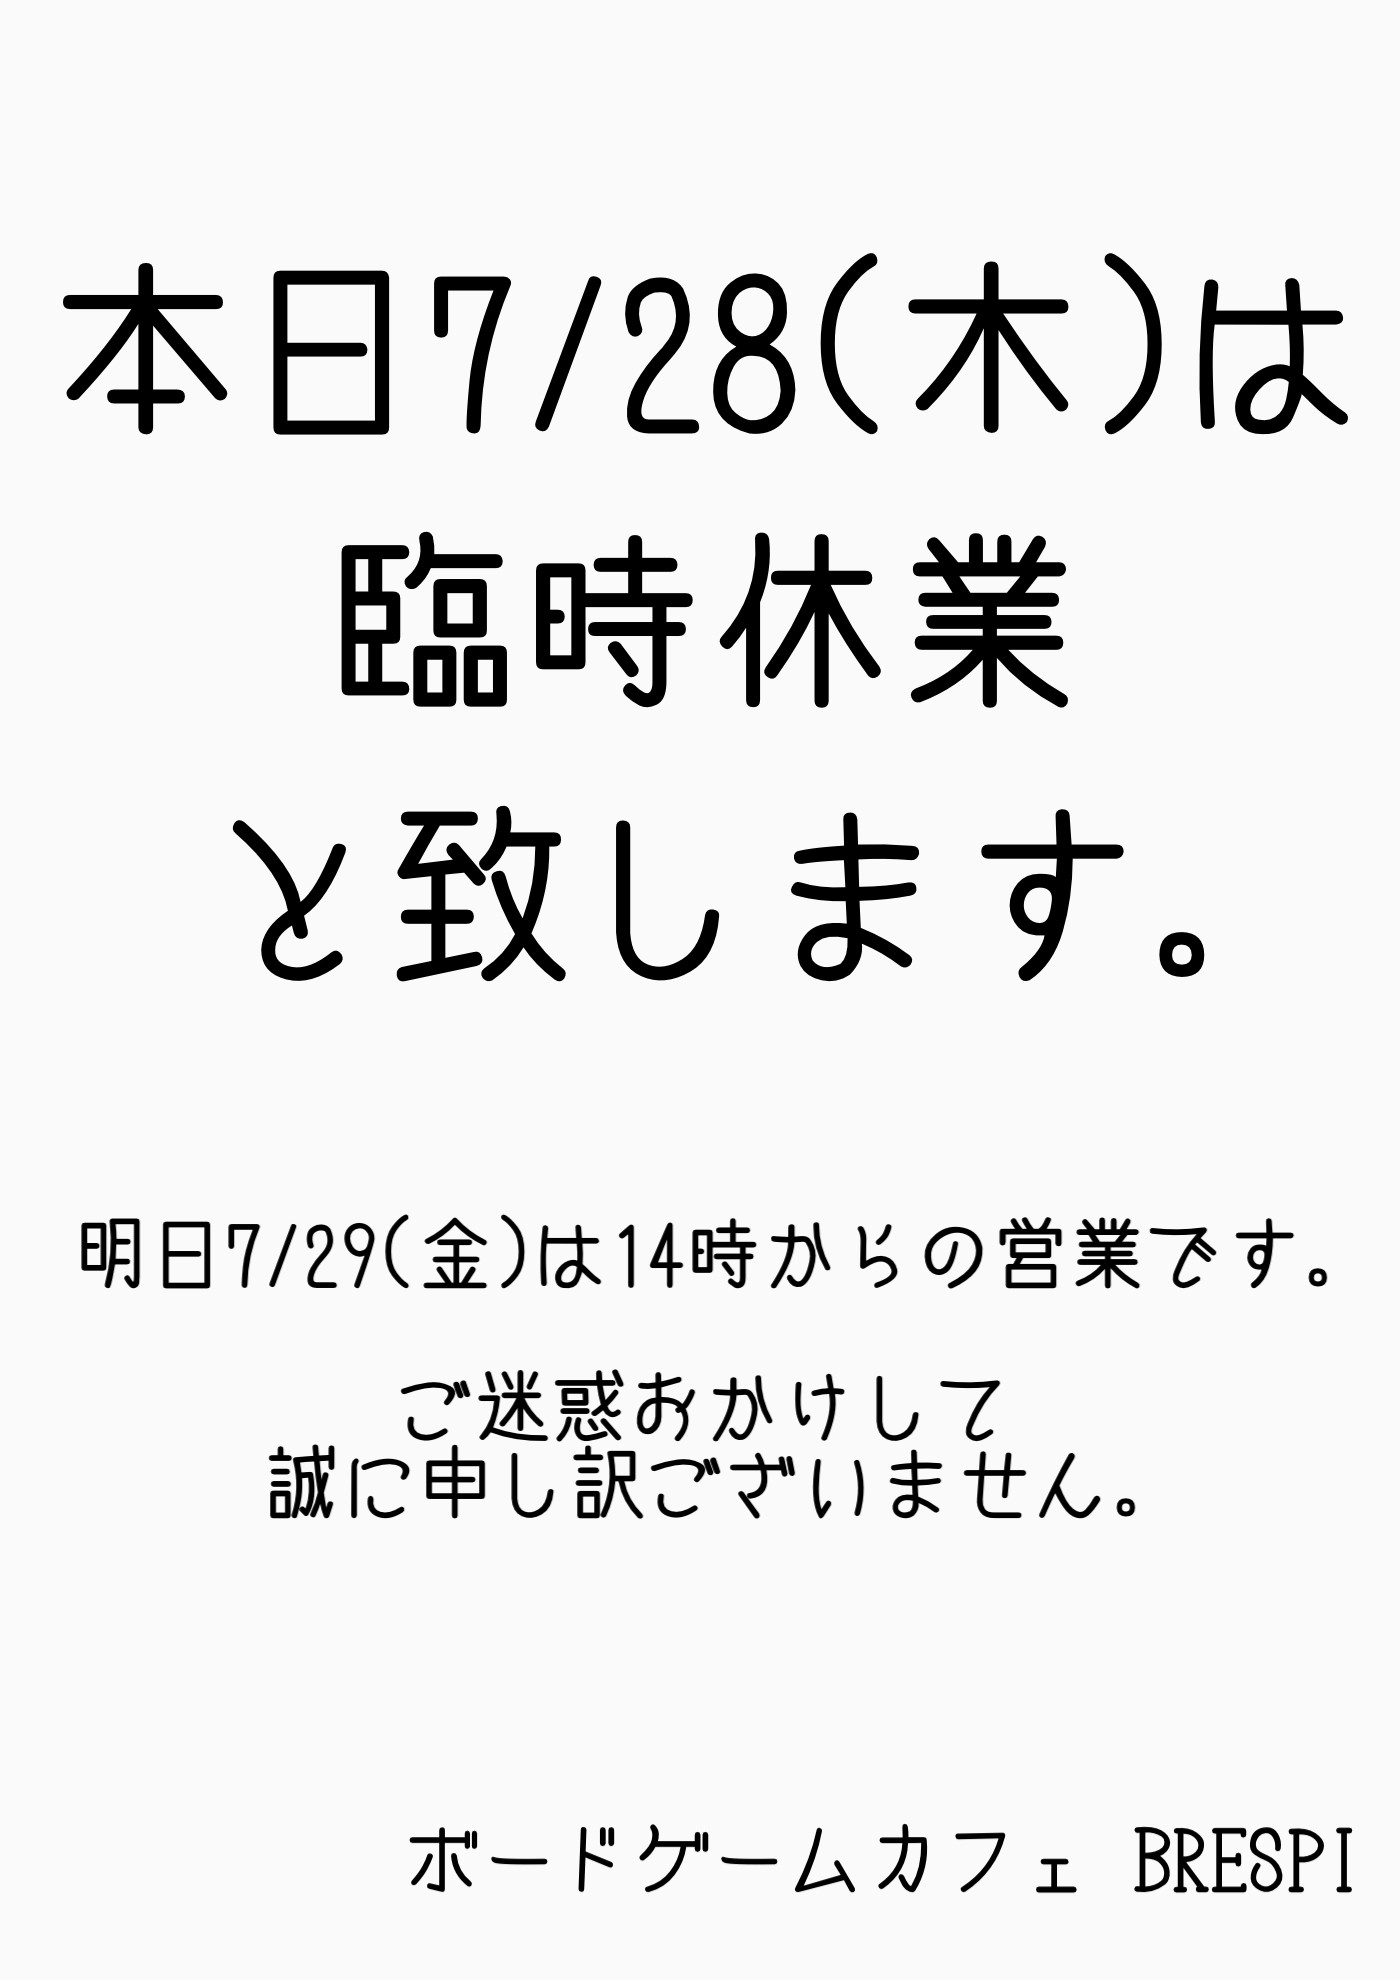 7/28(木)臨時休業のお知らせ